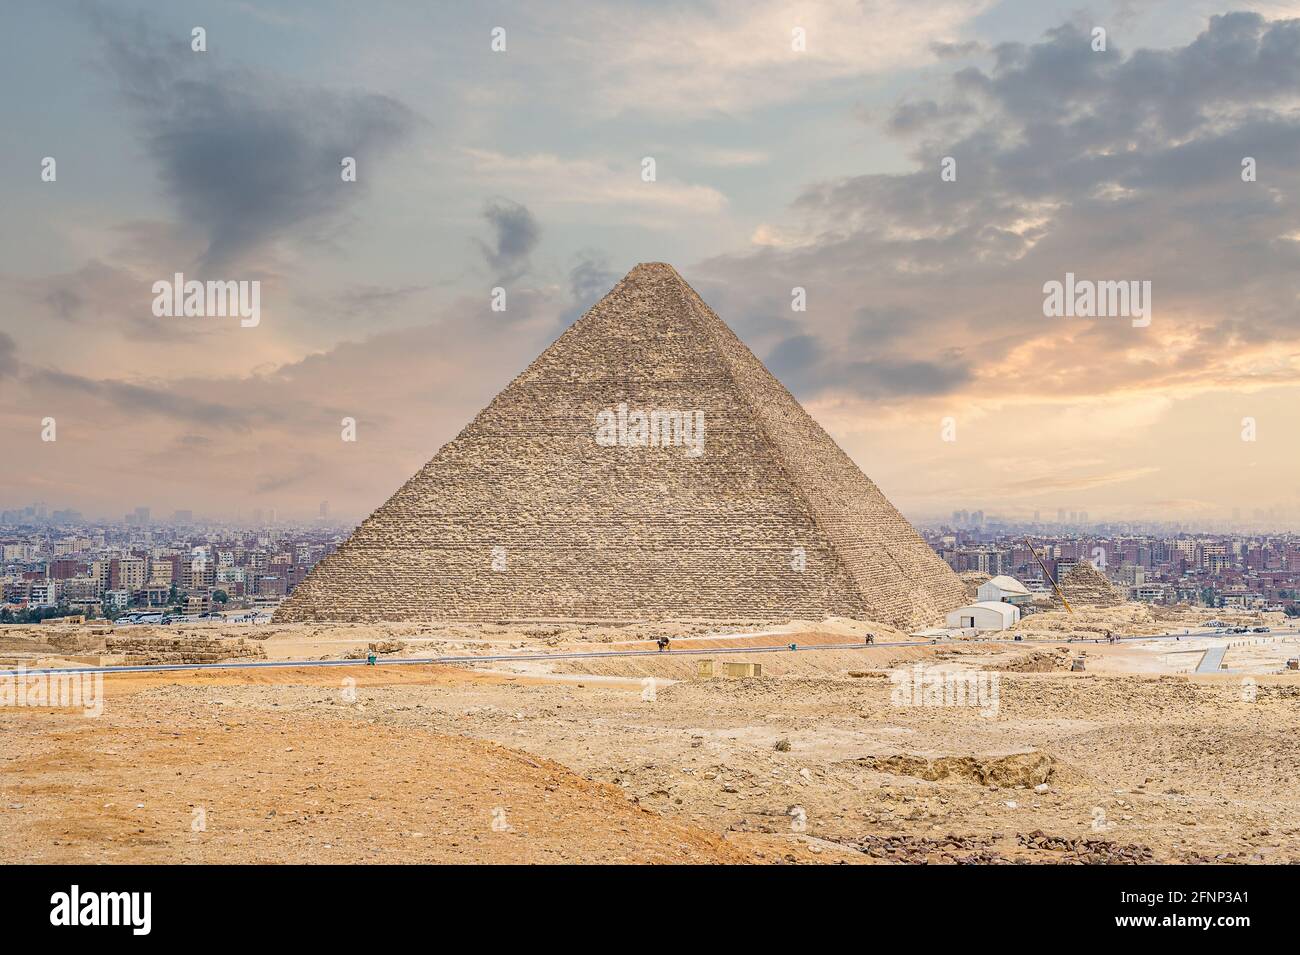 La grande pyramide de Cheops au Caire. Pyramides égyptiennes de Gizeh sur le fond du Caire. Monument architectural. Tombes de pharaons. Vacances holida Banque D'Images